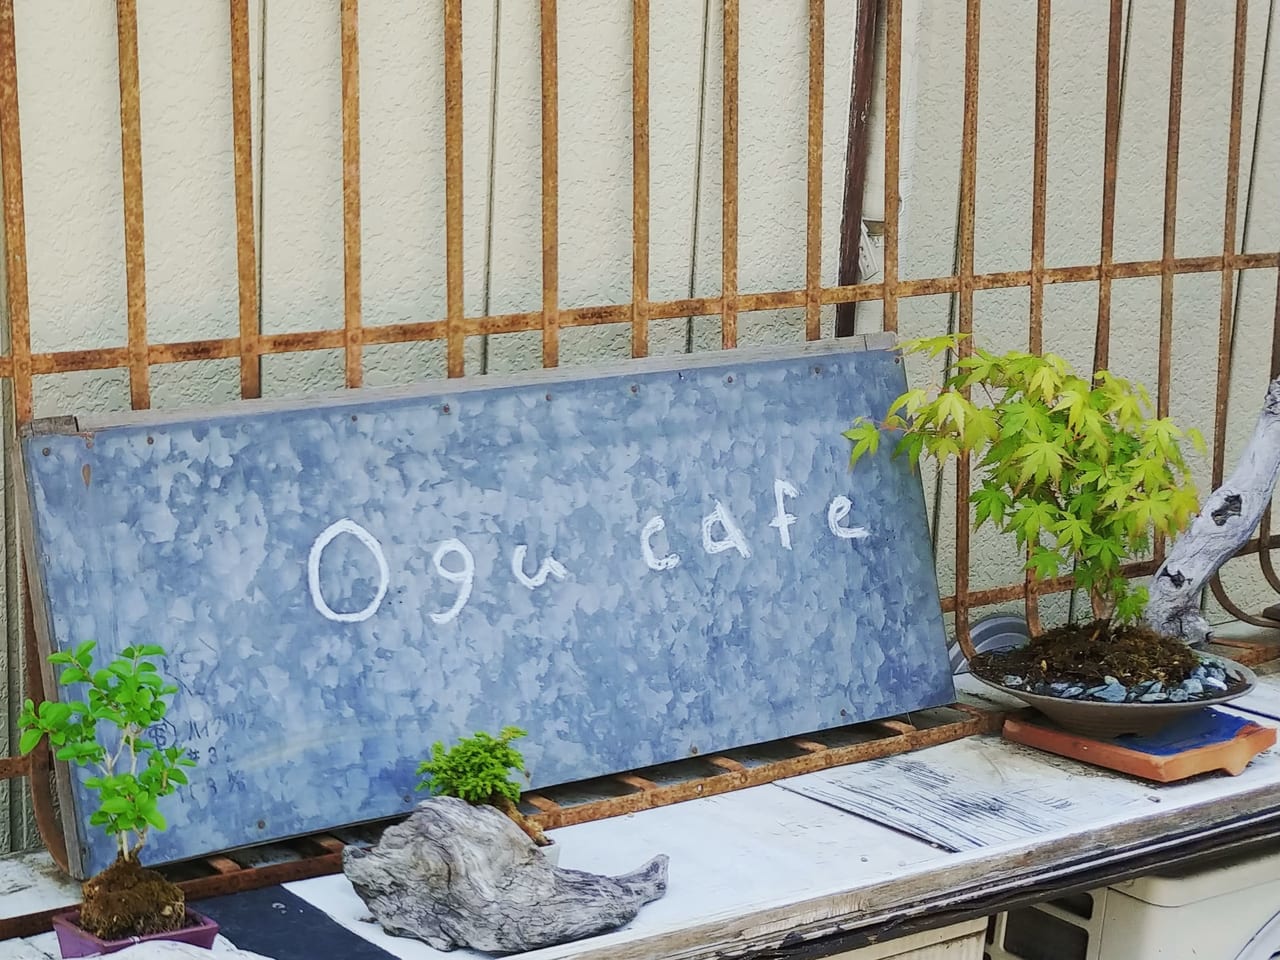 Ogu cafe